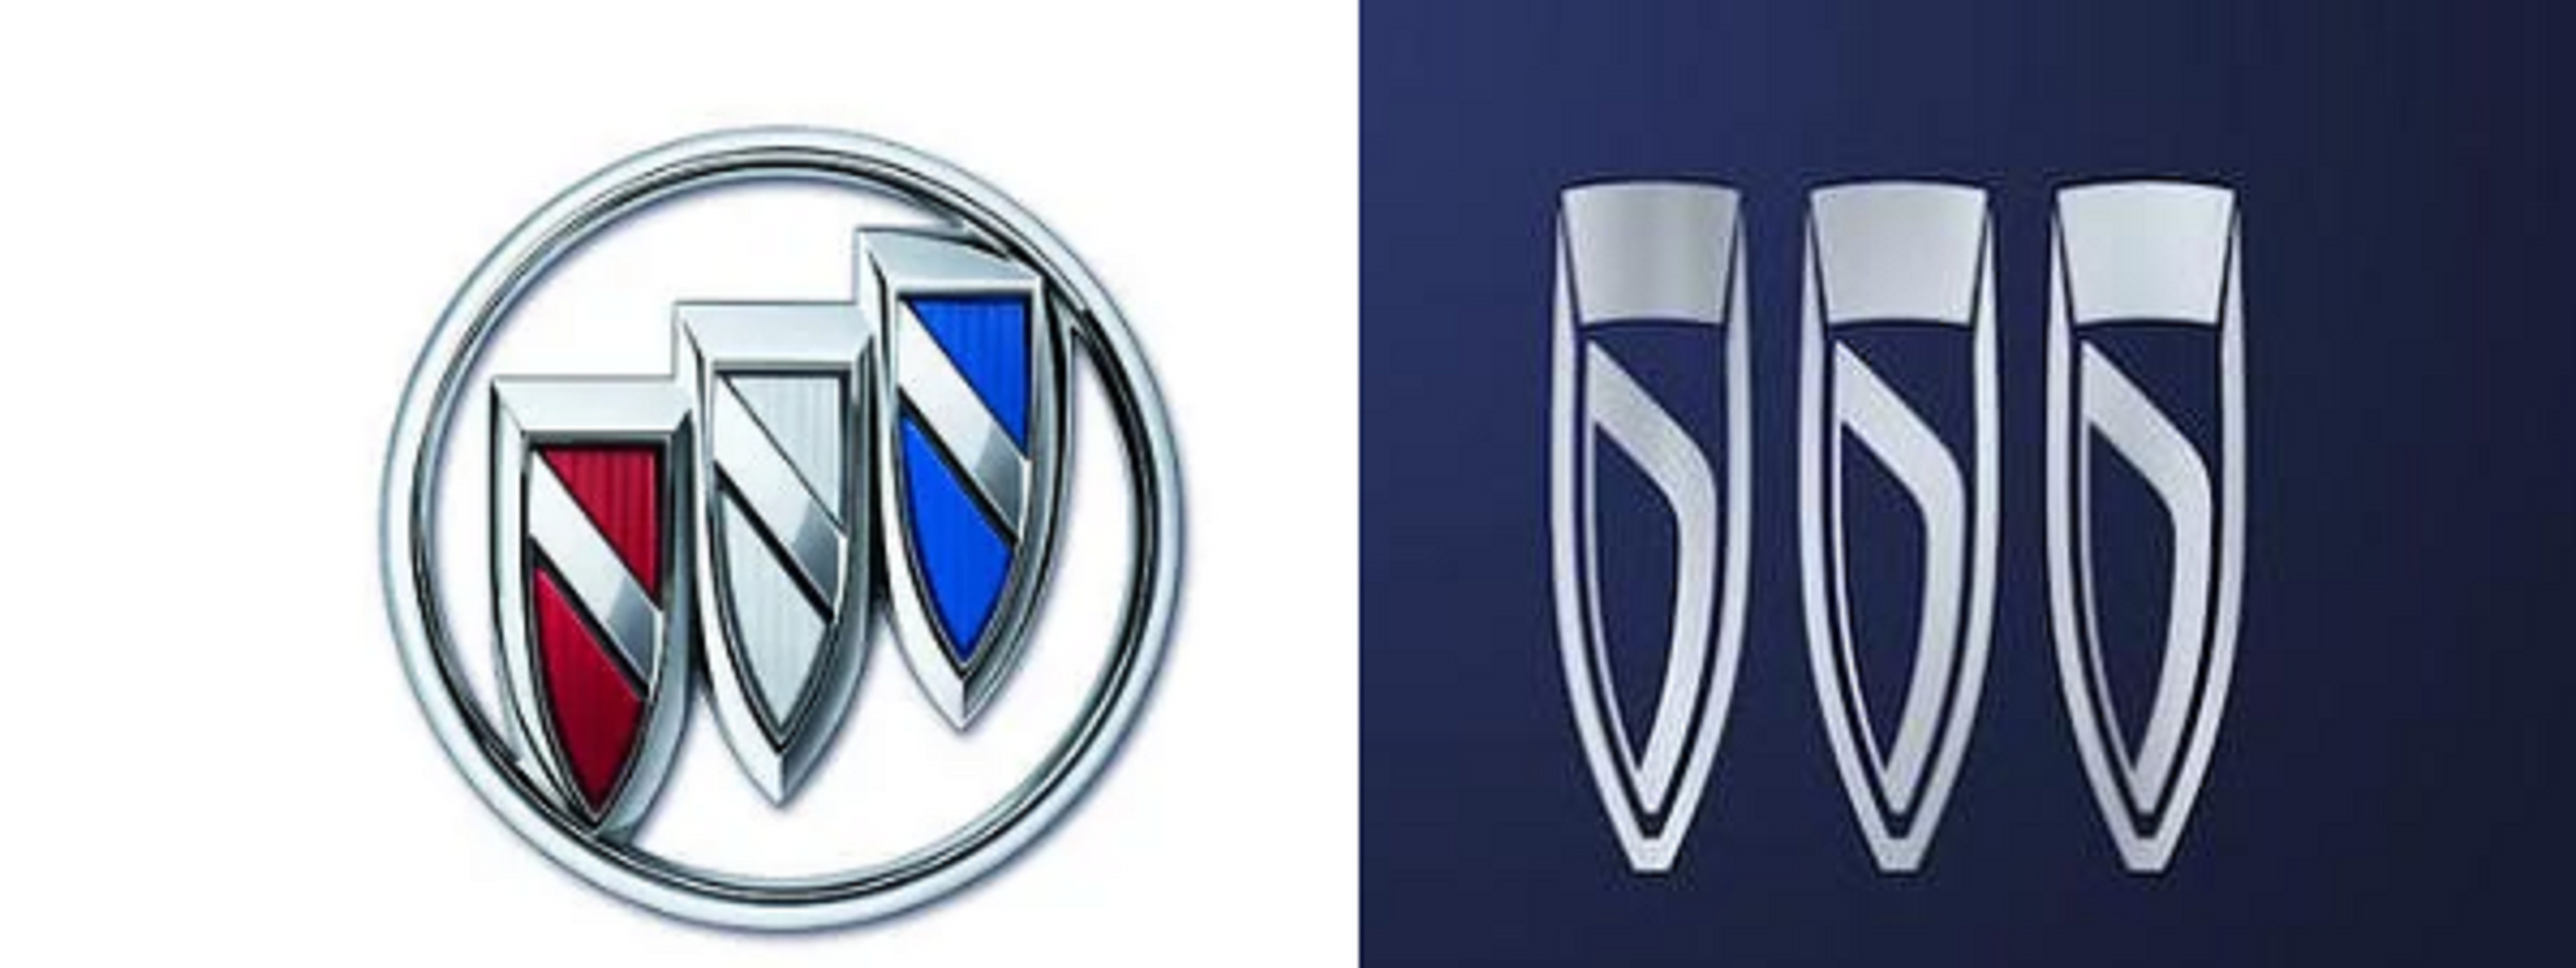 别克新车标曝光,新能源战略将有大动作 更换logo对品牌来说通常是